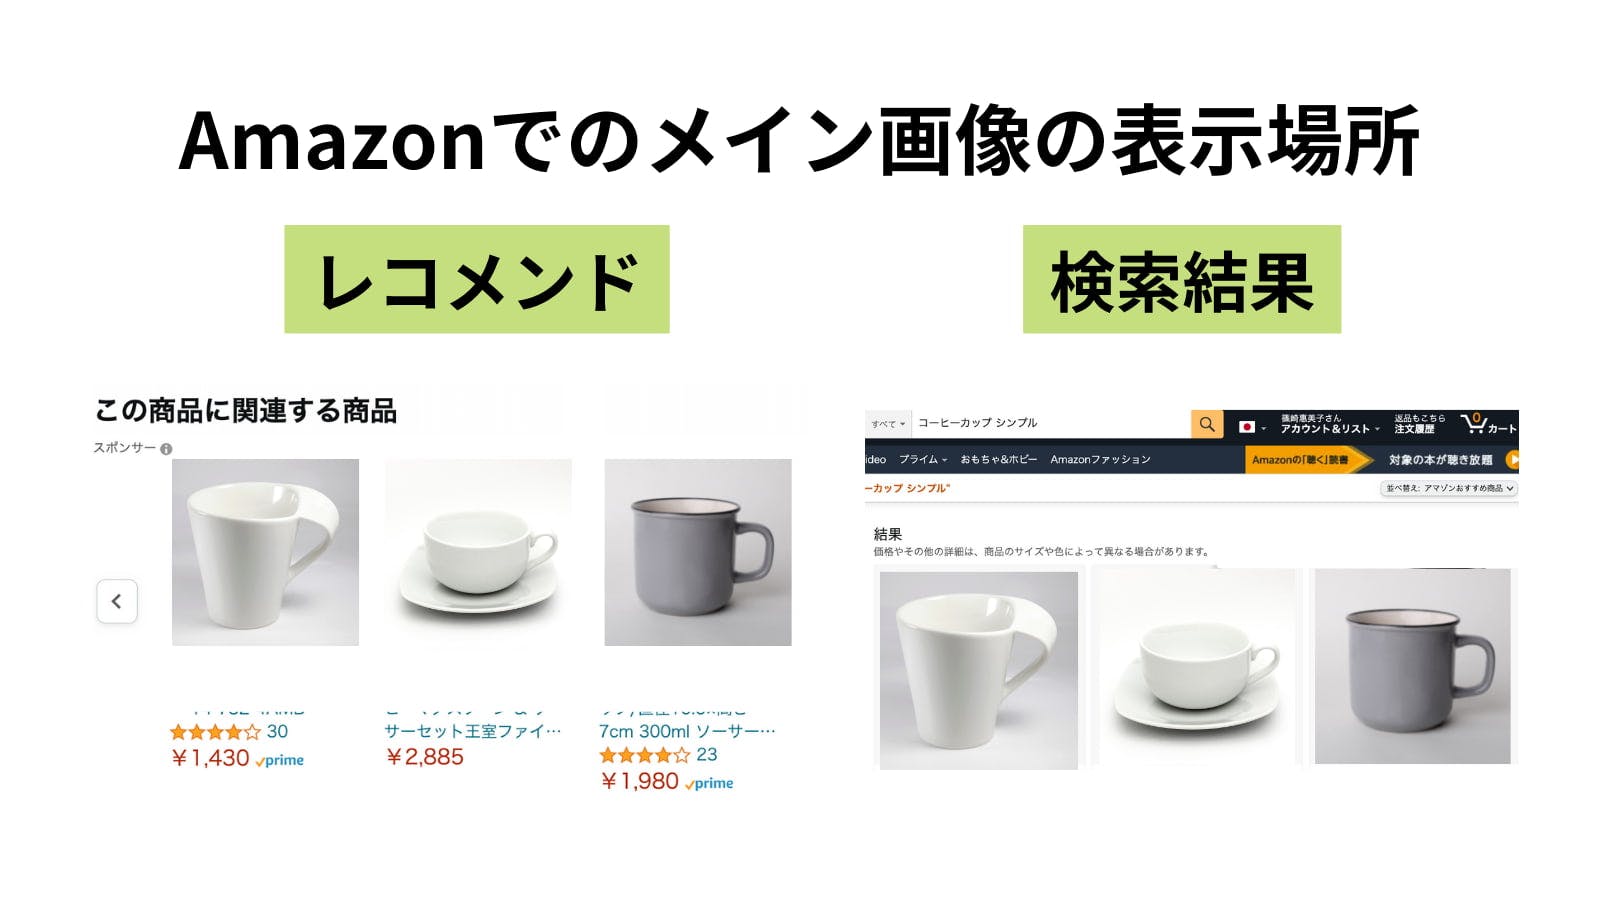 Amazonのメイン商品画像の表示場所(レコメンド・検索結果画面)